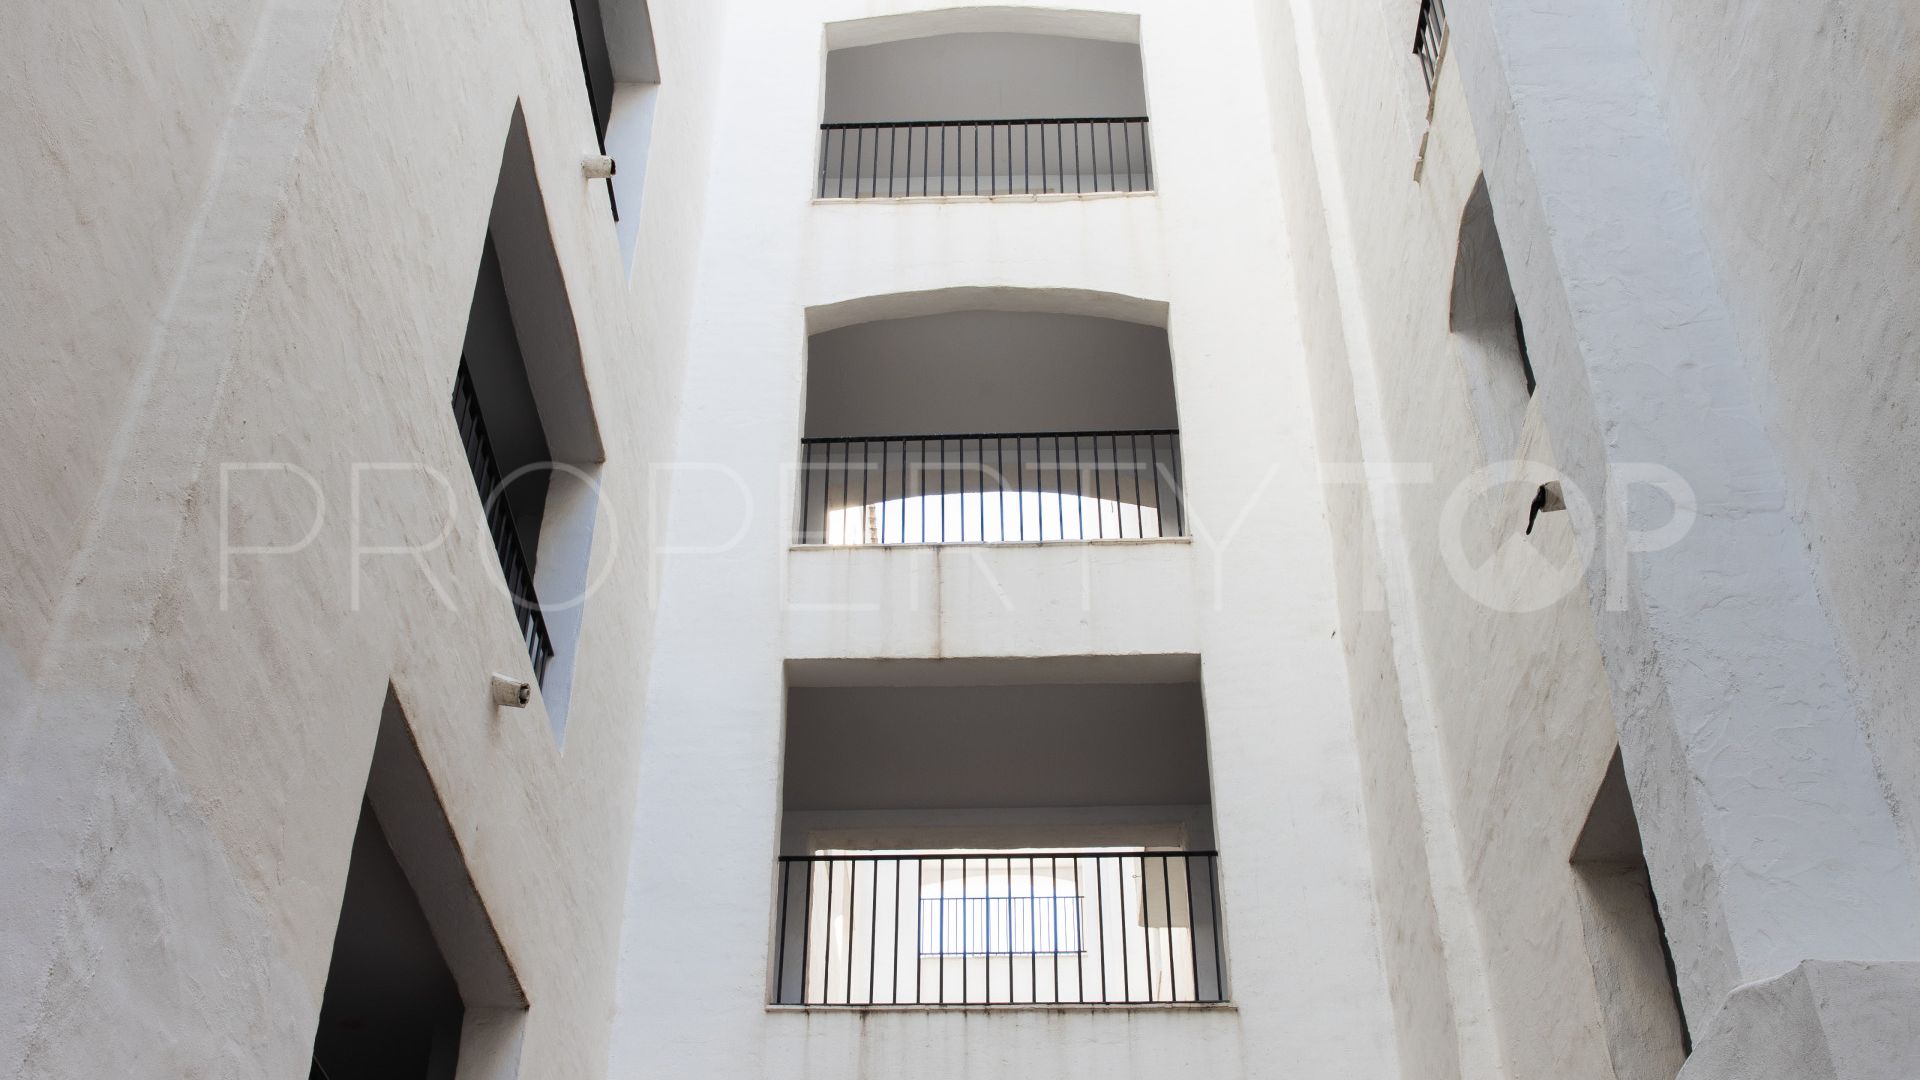 3 bedrooms Jardines del Puerto ground floor apartment for sale